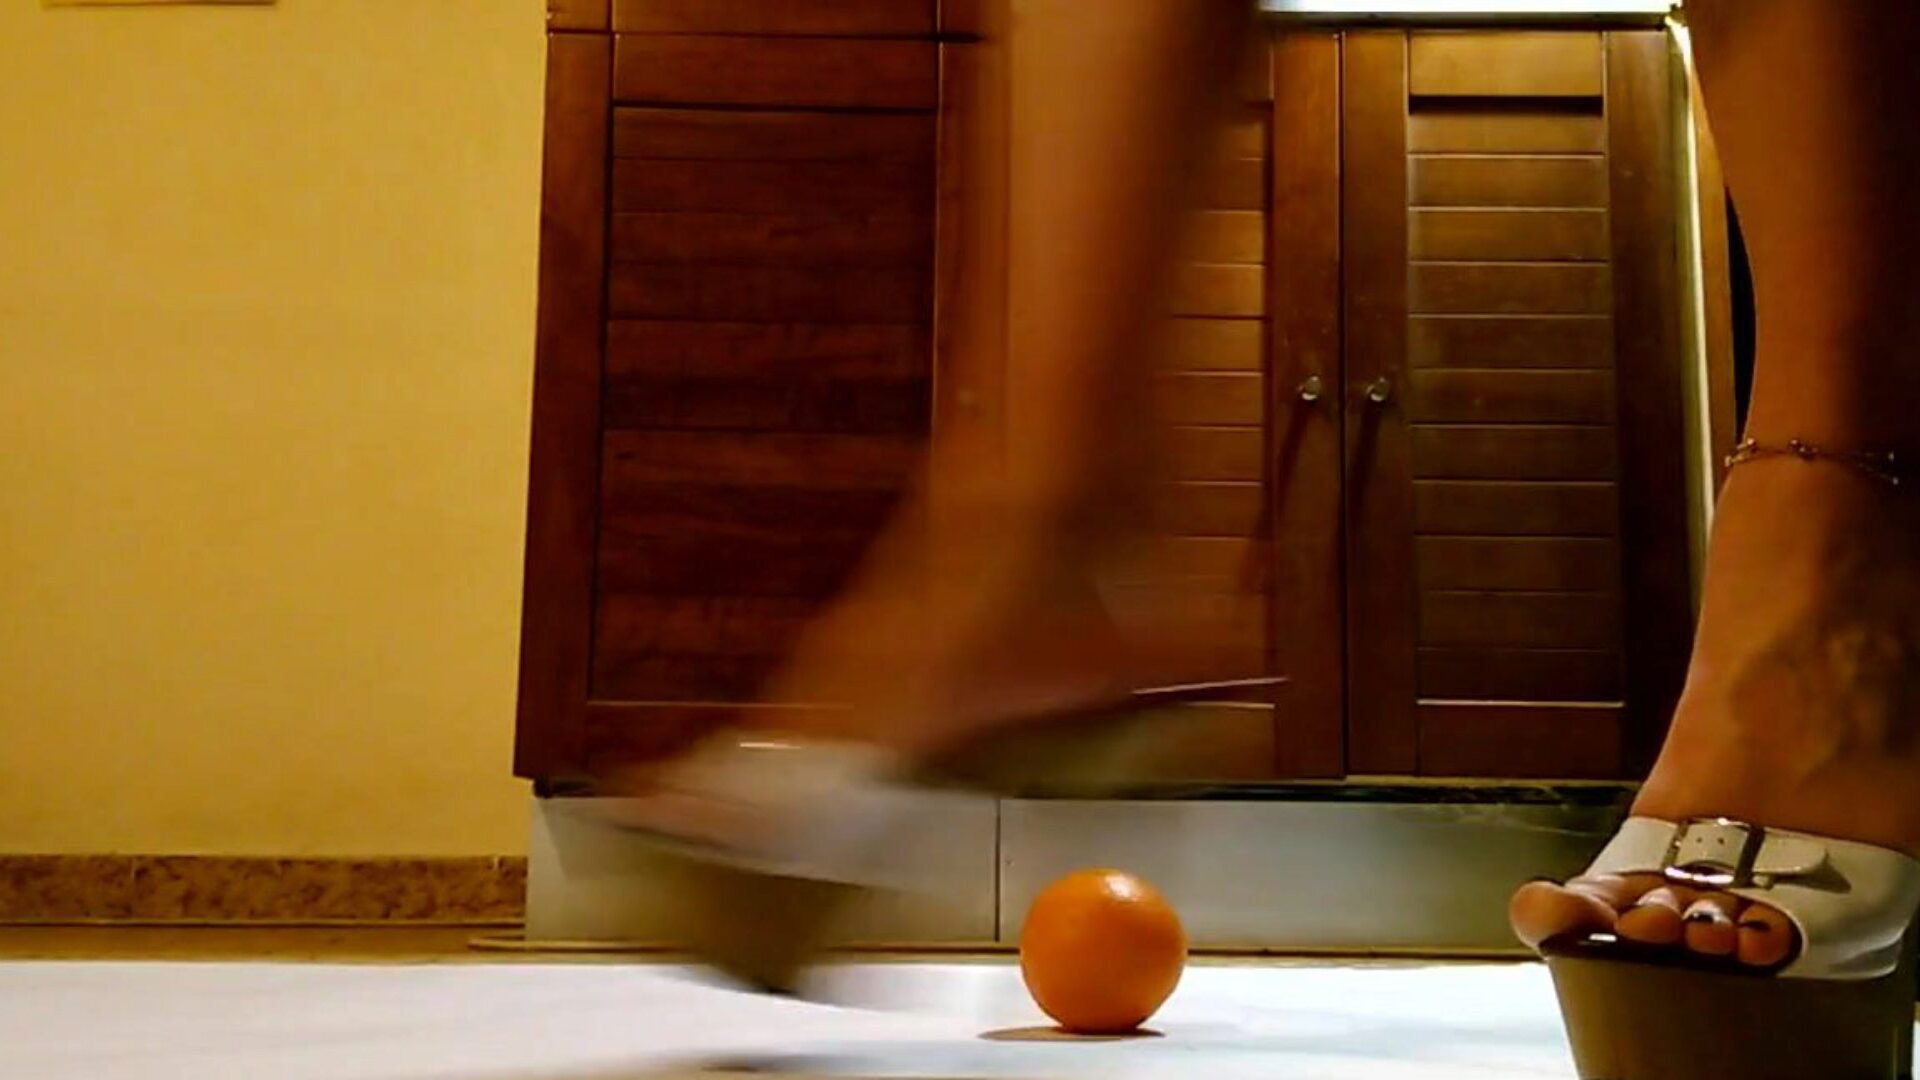 yüksek topuklu ayakkabılarda garson oynamak ve turuncu yumruk atmak garson seksi platform yüksek topuklu ayakkabılarla eğlenmek ve turuncu tekme